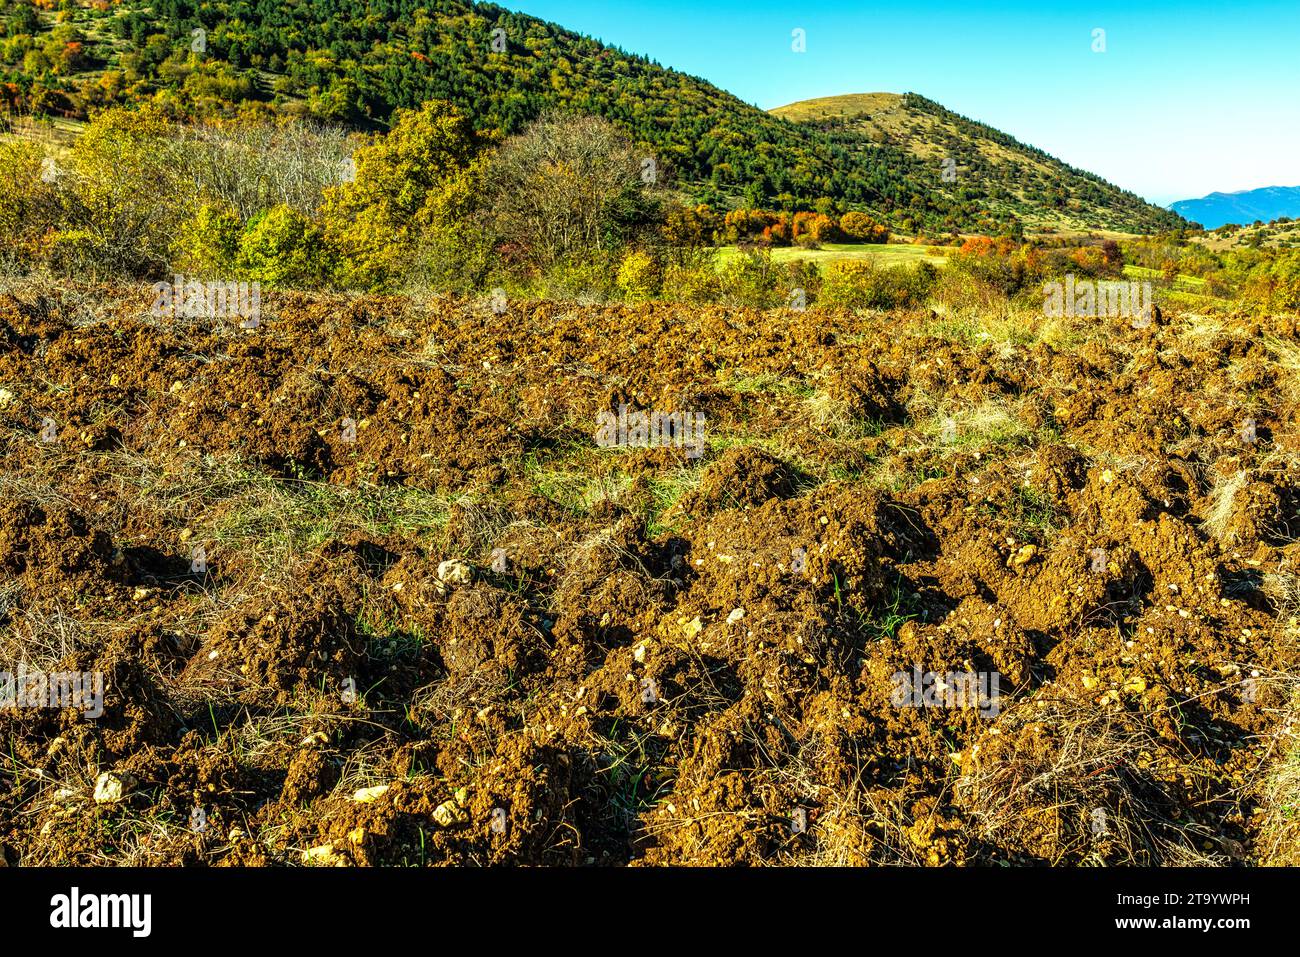 briser et labourer les terres agricoles dans les montagnes pour se préparer à la période hivernale. Cansano, province de l'Aquila, Abruzzes, Italie Banque D'Images